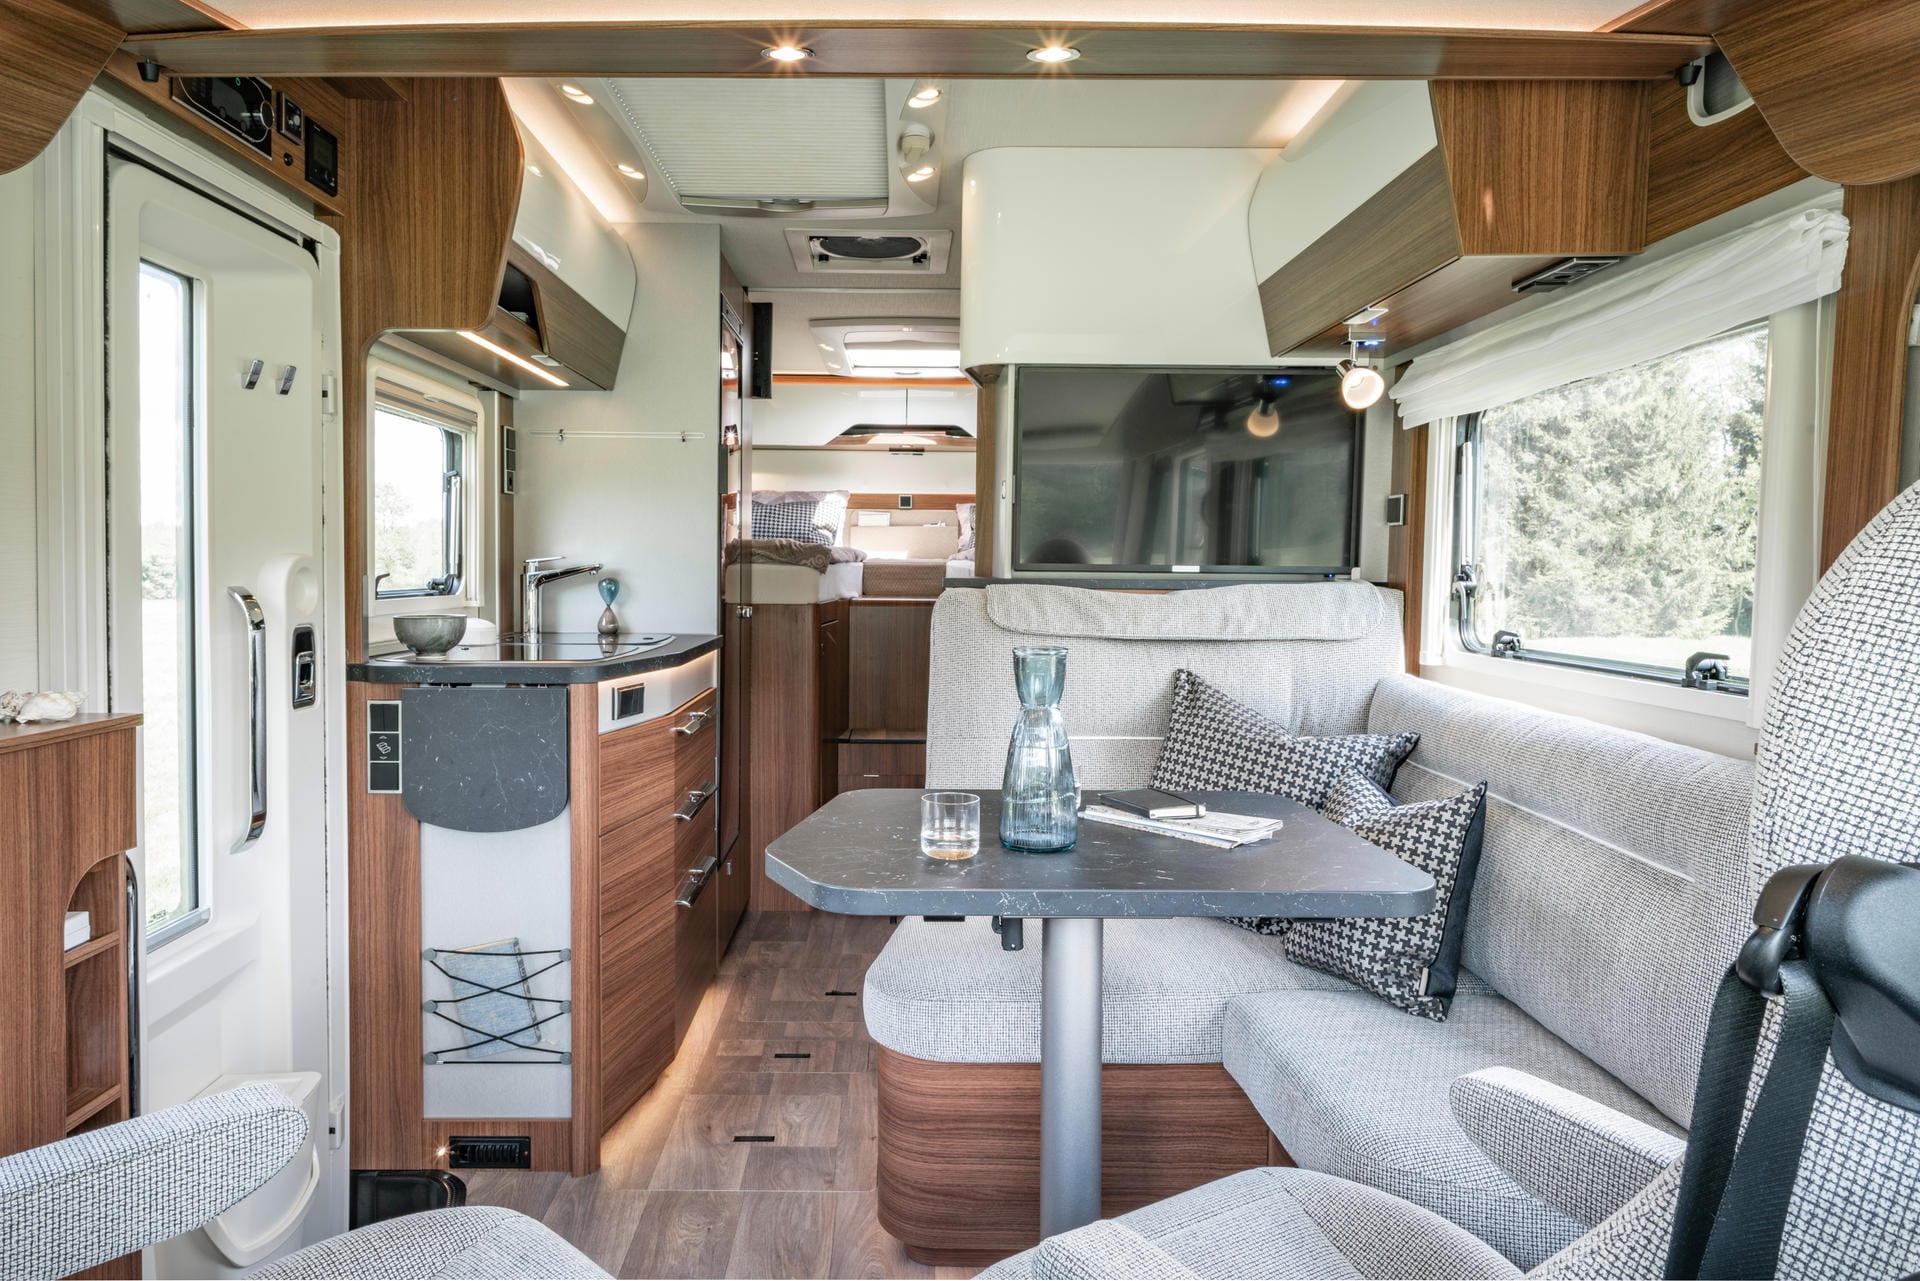 Wohnung zum Mitnehmen: In Wohnmobilen wie in der neuen B-Klasse Modern Comfort von Hymer wollen die Hersteller von zu Hause gekannten Komfort bieten.